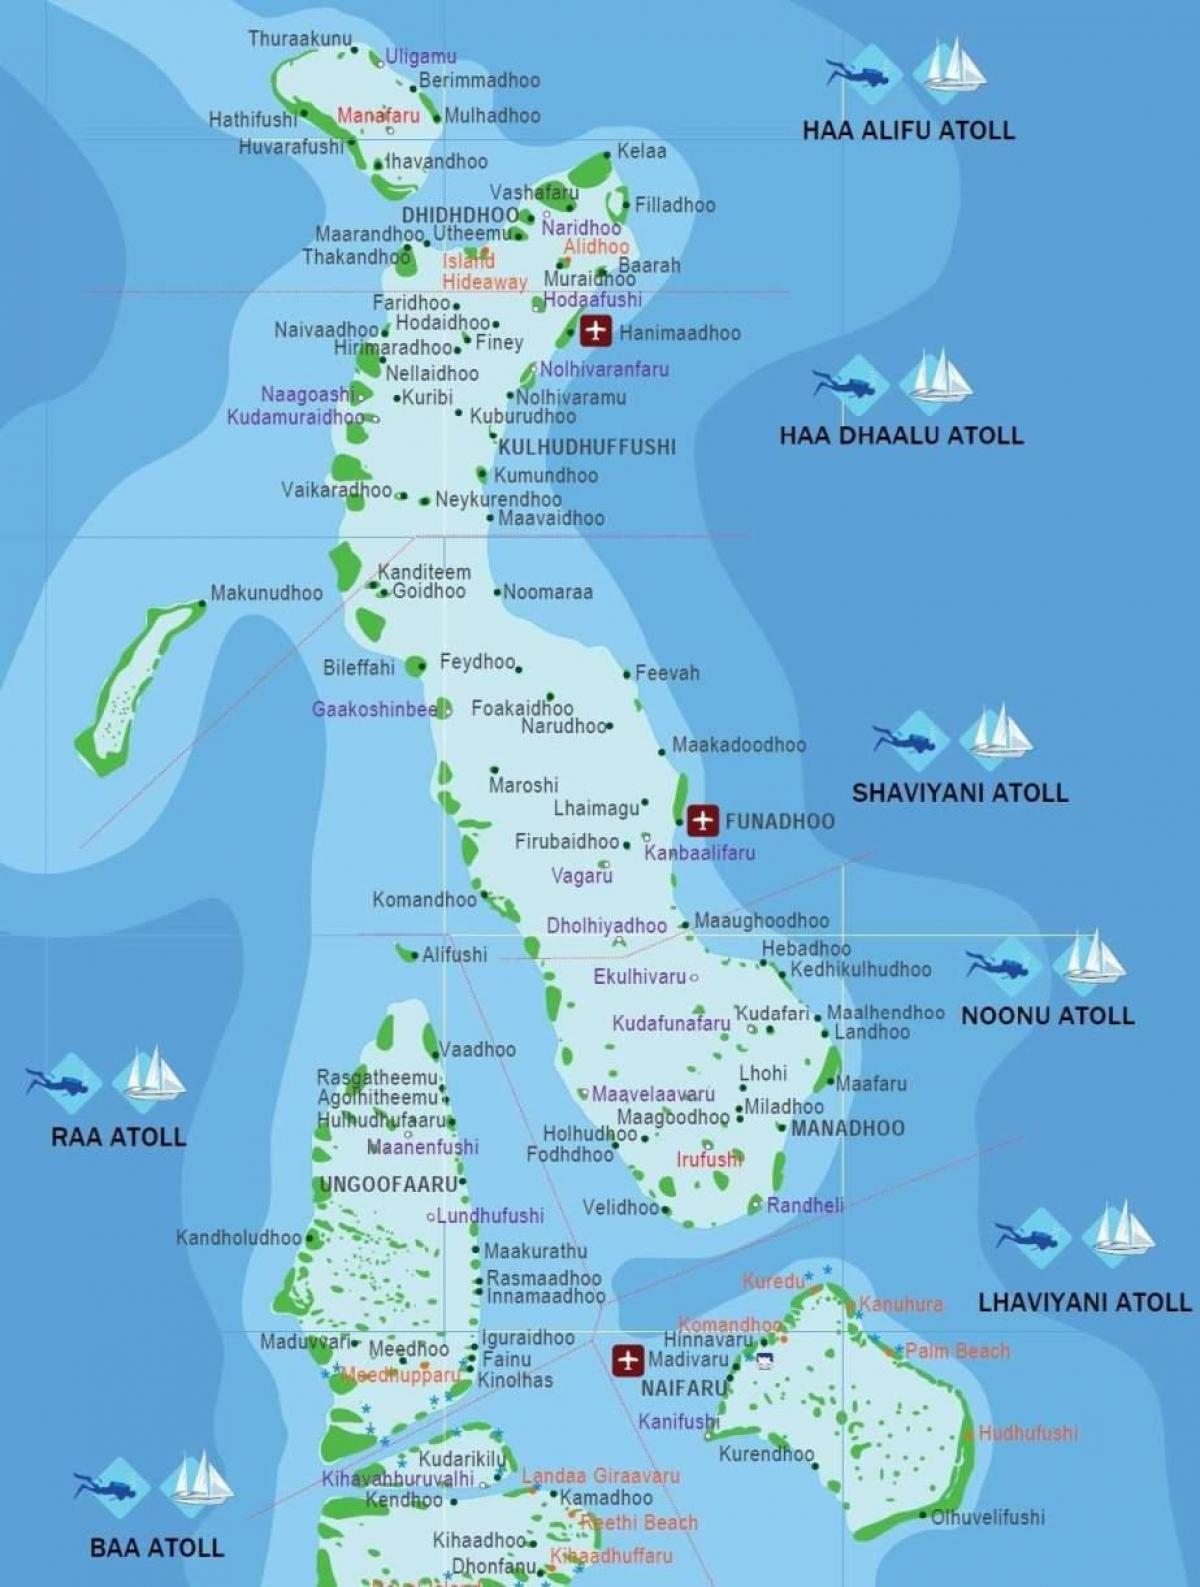 completo mapa de maldivas